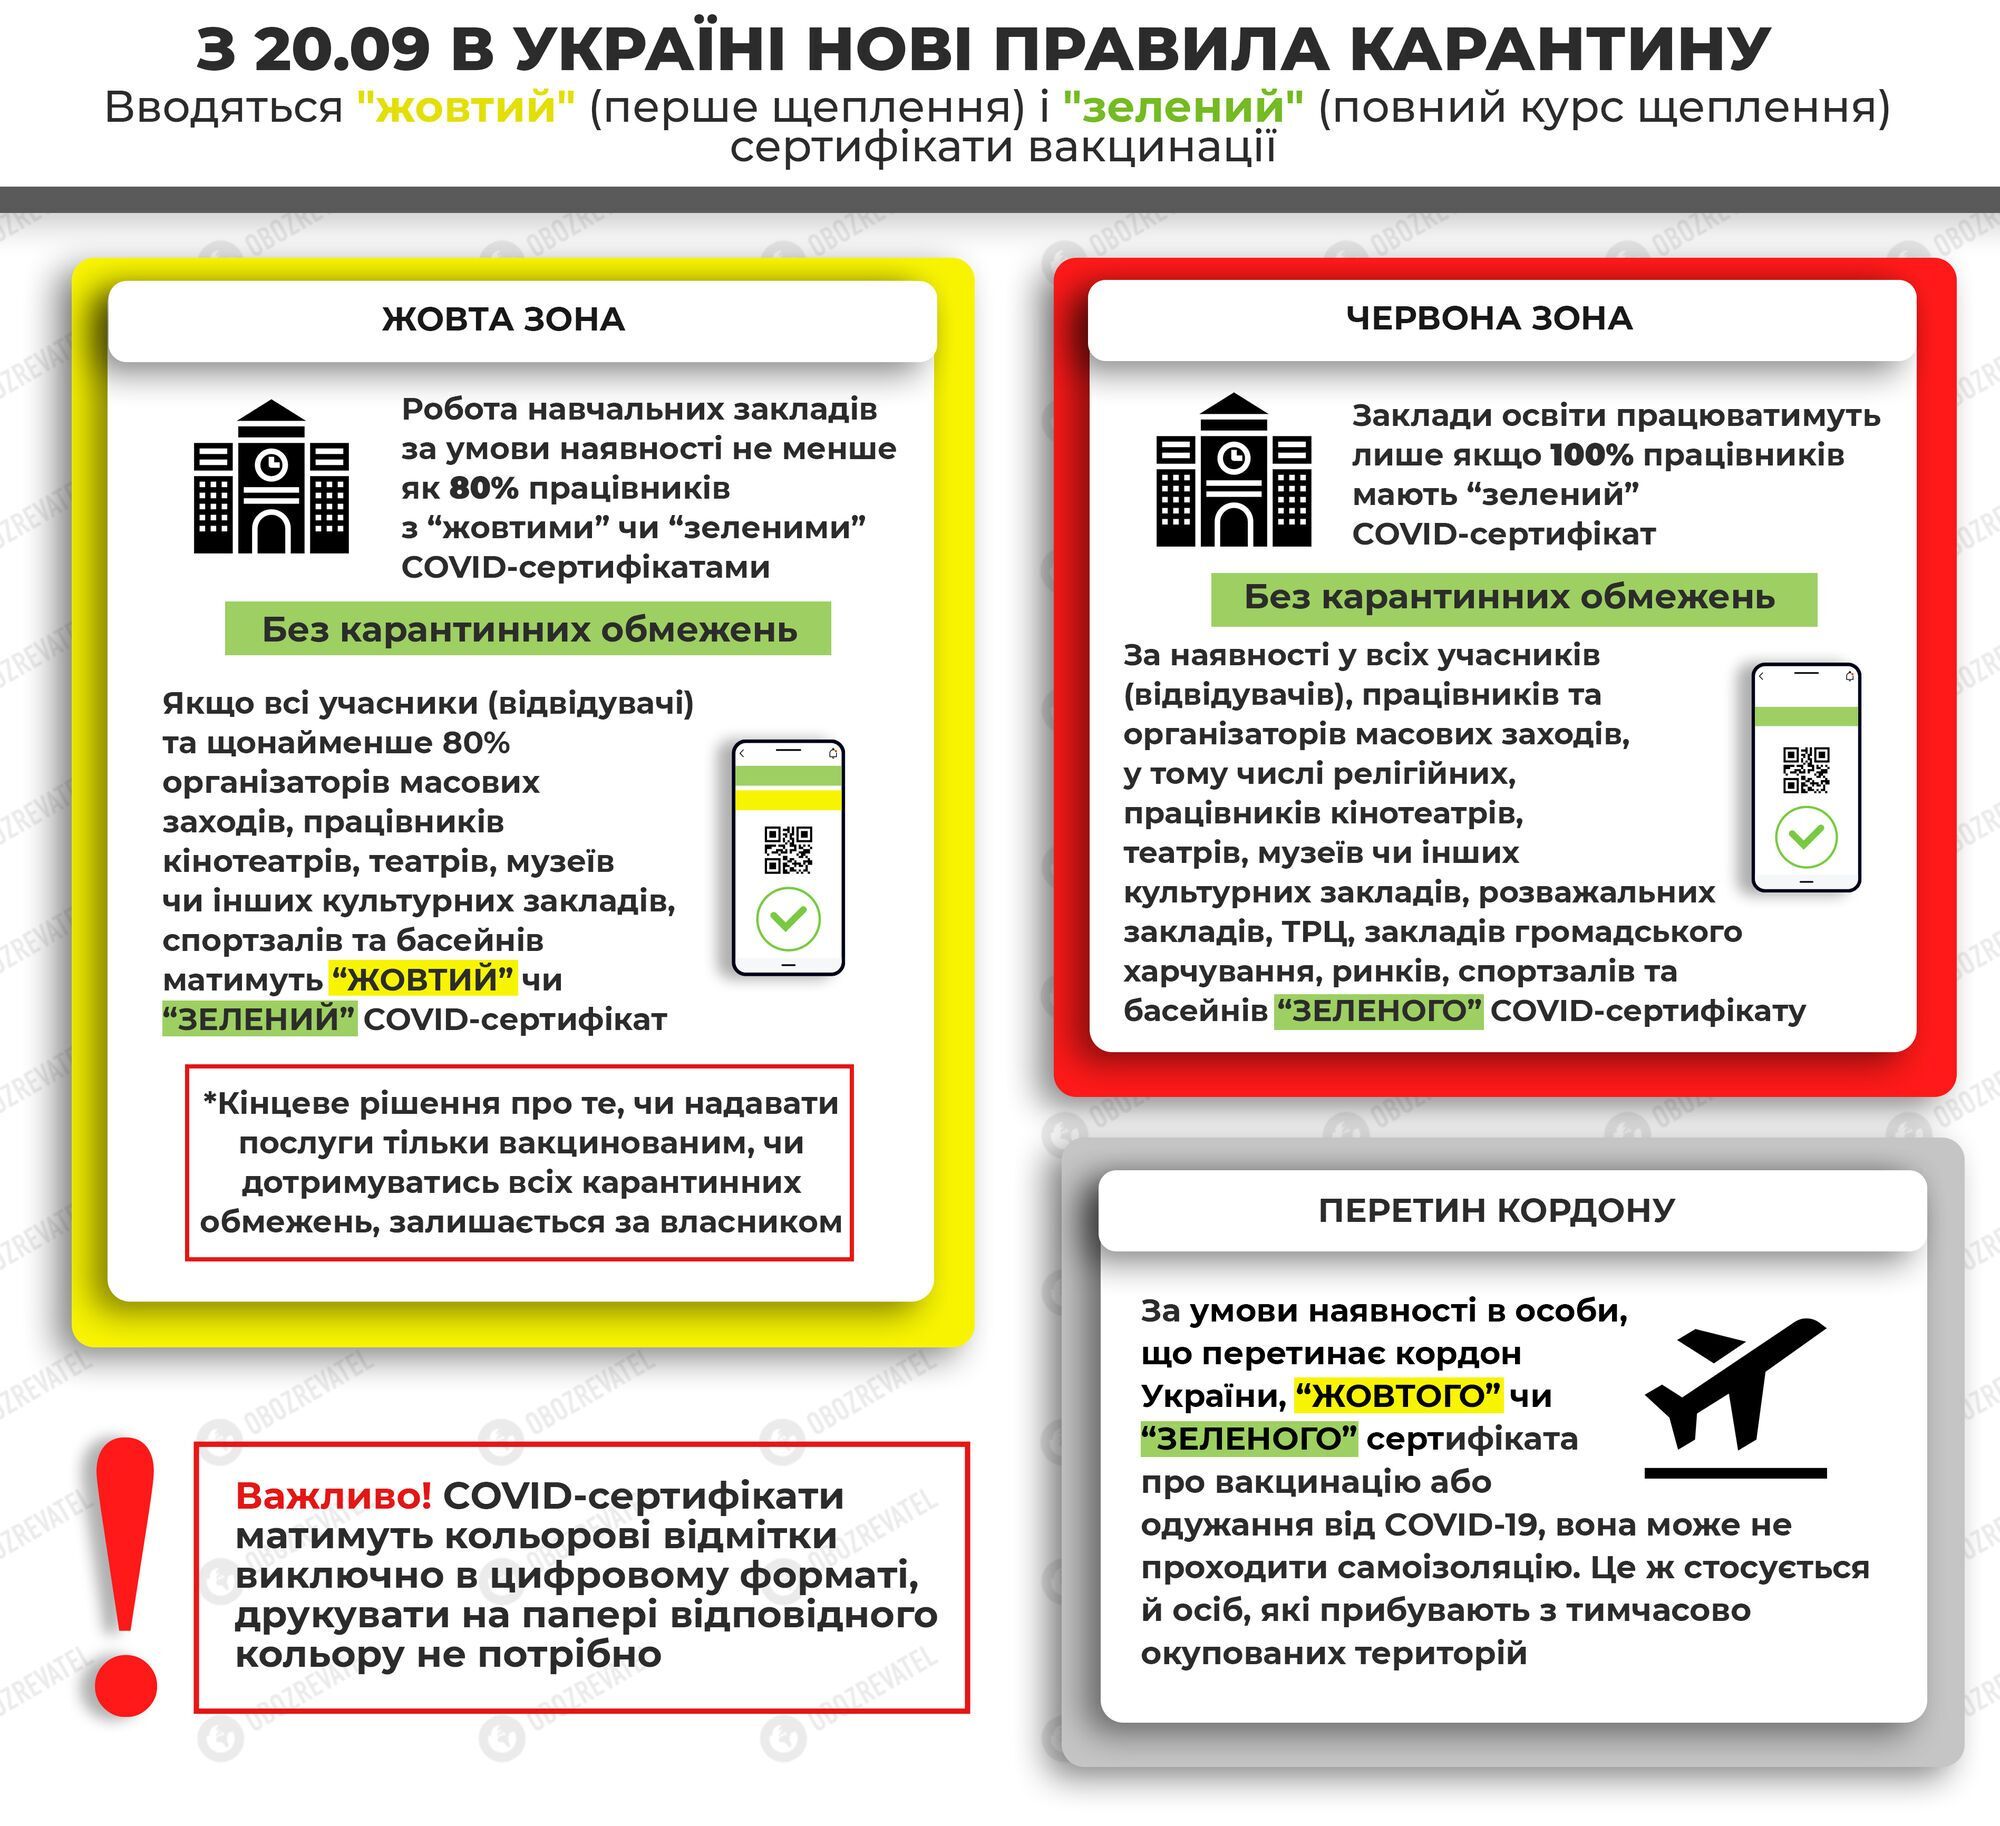 Правила карантину в епідемічних зонах України